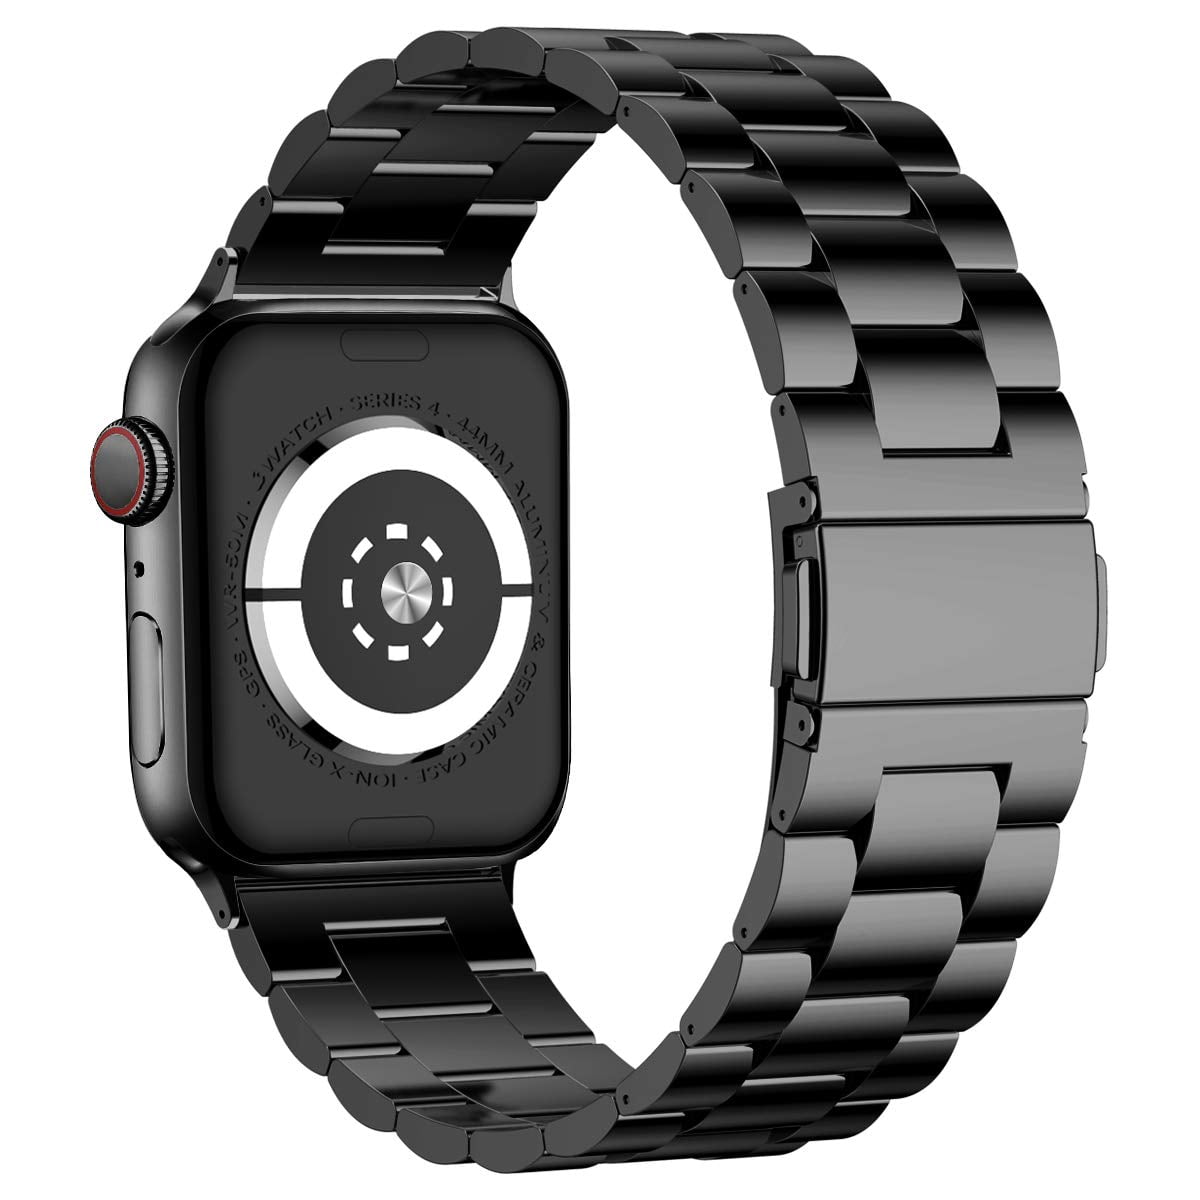 Galaxy Wireless USA - Apple Watch Band 38mm/40mm Stainless Steel iWatch Apple Watch Stainless Steel Link Band